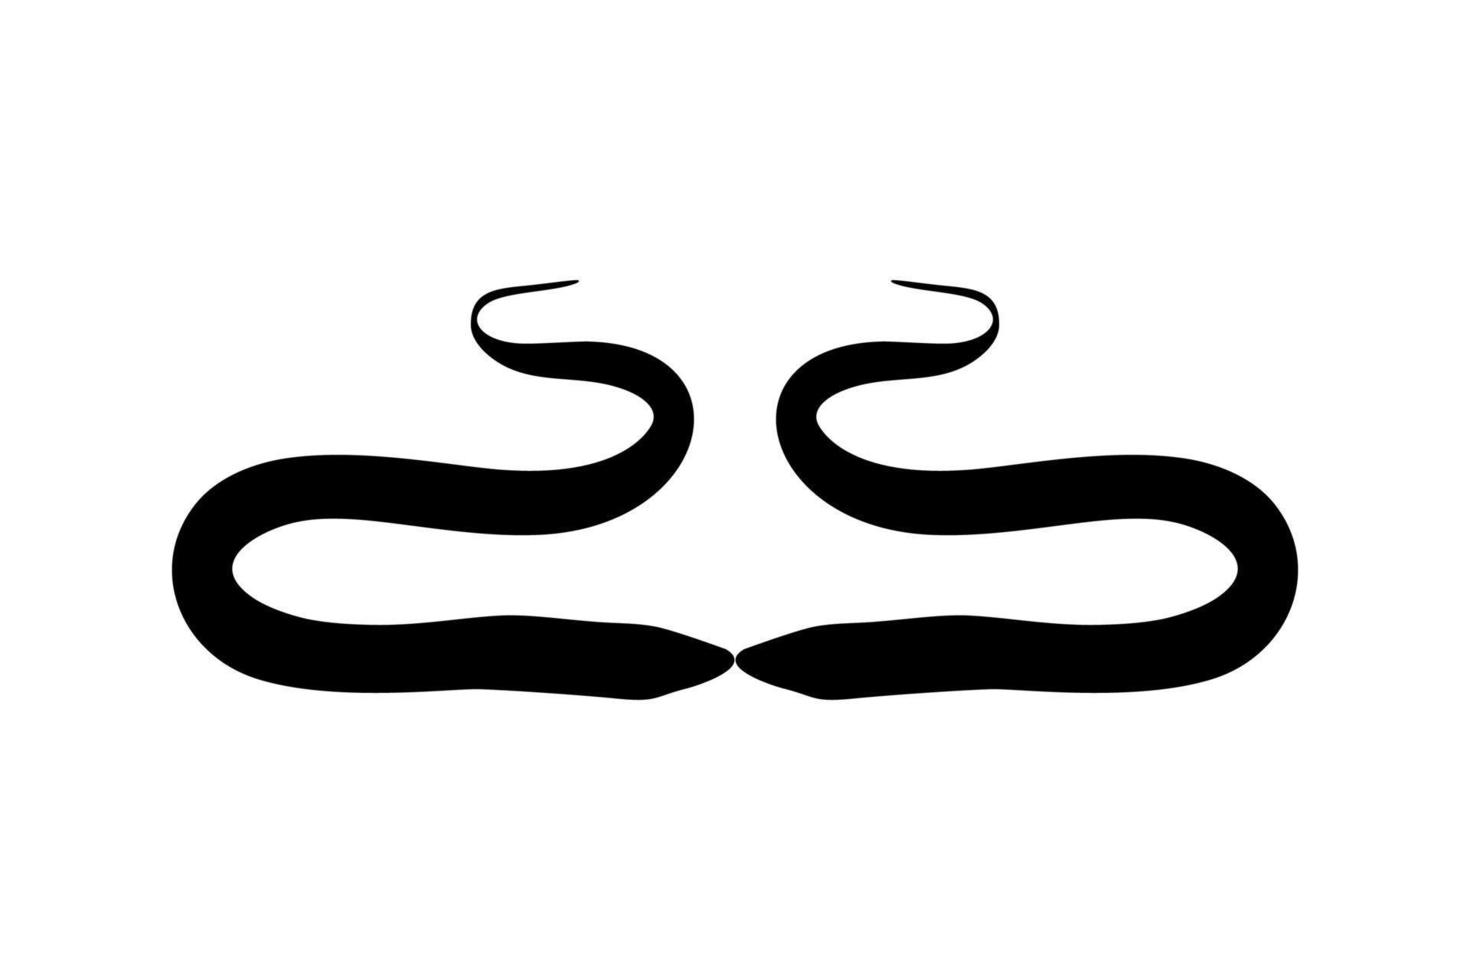 silueta de anguila para logotipo, pictograma, sitio web, aplicaciones o elemento de diseño gráfico. ilustración vectorial vector